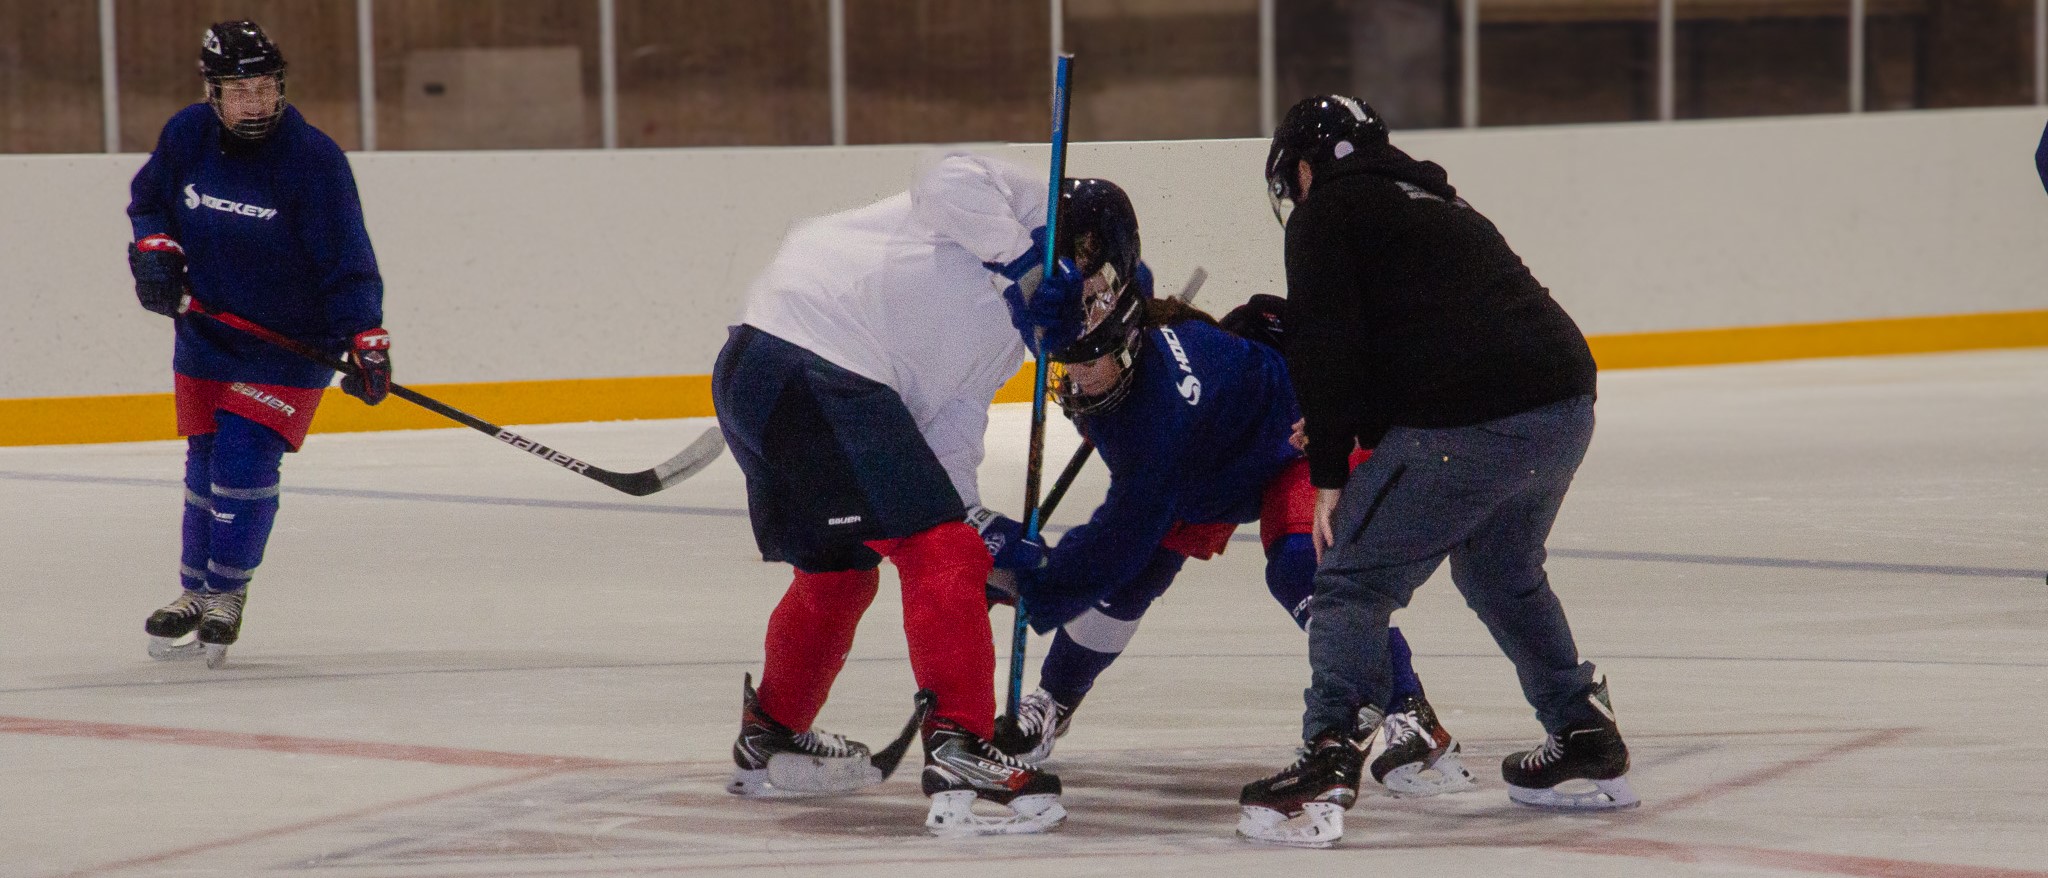 Tre hockeyspelare och en -domare på is. Två av spelarna tekar